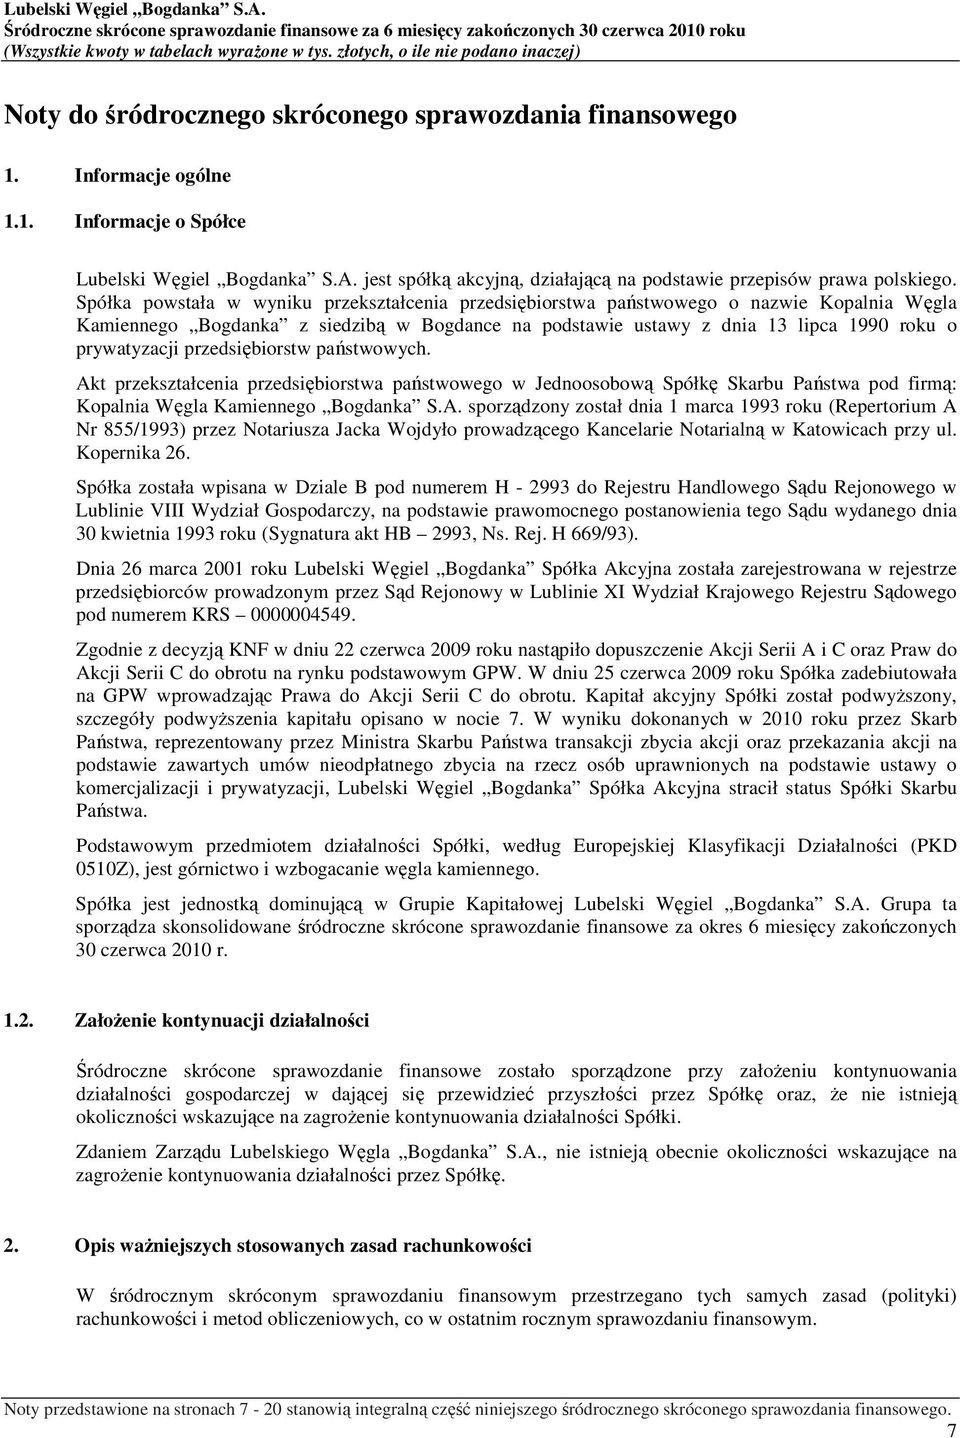 Spółka powstała w wyniku przekształcenia przedsiębiorstwa państwowego o nazwie Kopalnia Węgla Kamiennego Bogdanka z siedzibą w Bogdance na podstawie ustawy z dnia 13 lipca 1990 roku o prywatyzacji